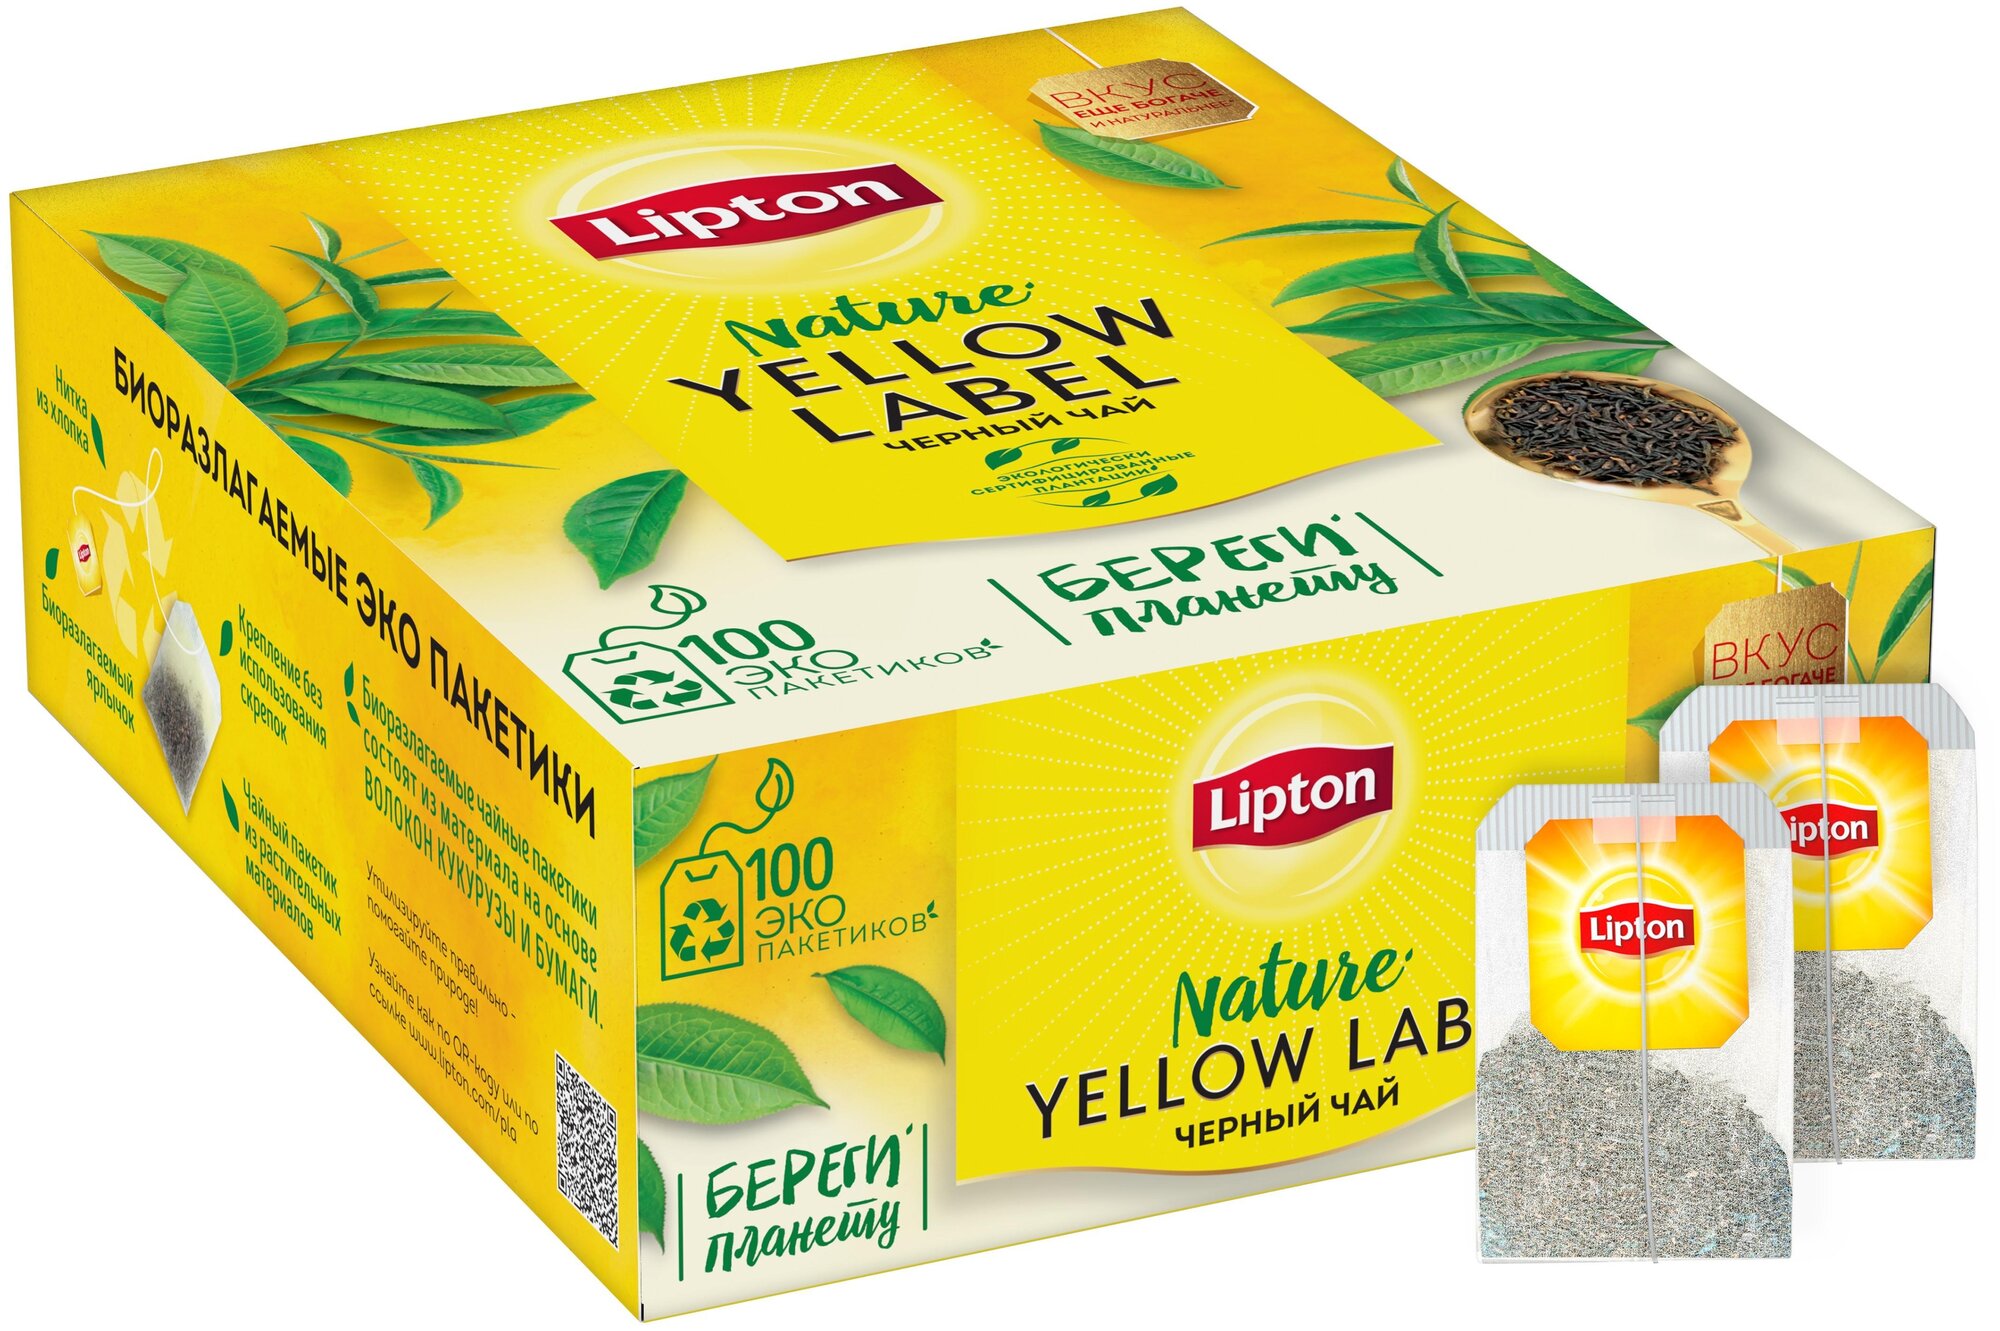 Чай черный Lipton Yellow label в пакетиках